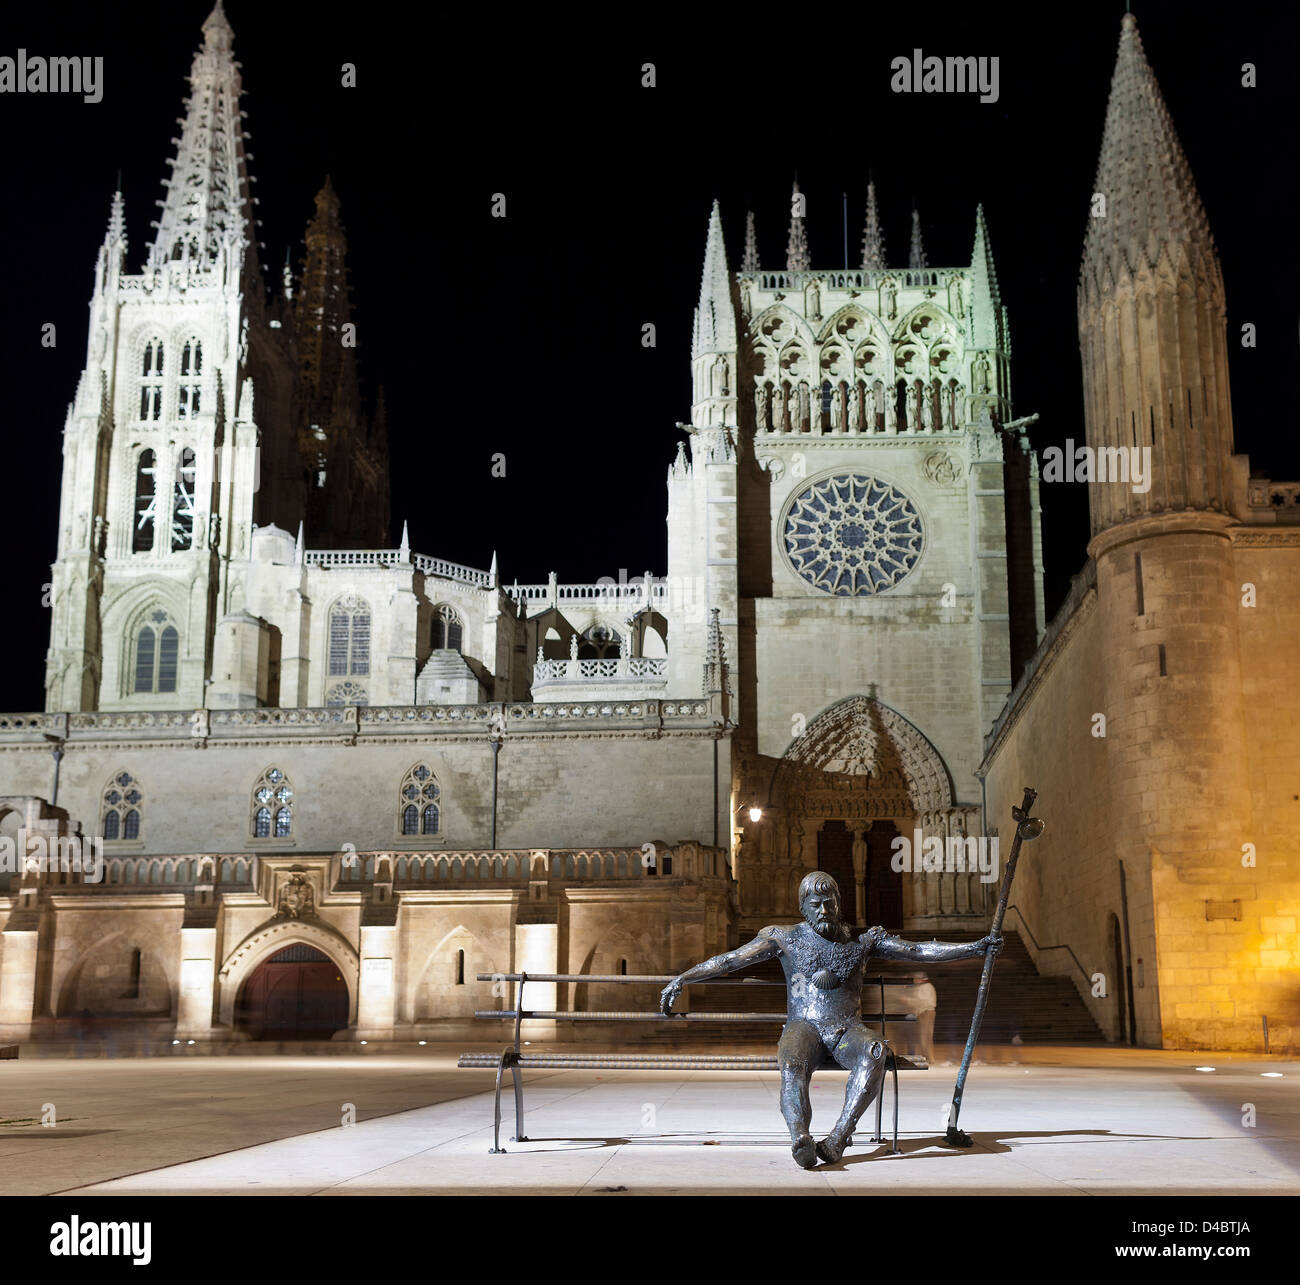 Vista notturna della cattedrale gotica di Burgos in Spagna Foto Stock